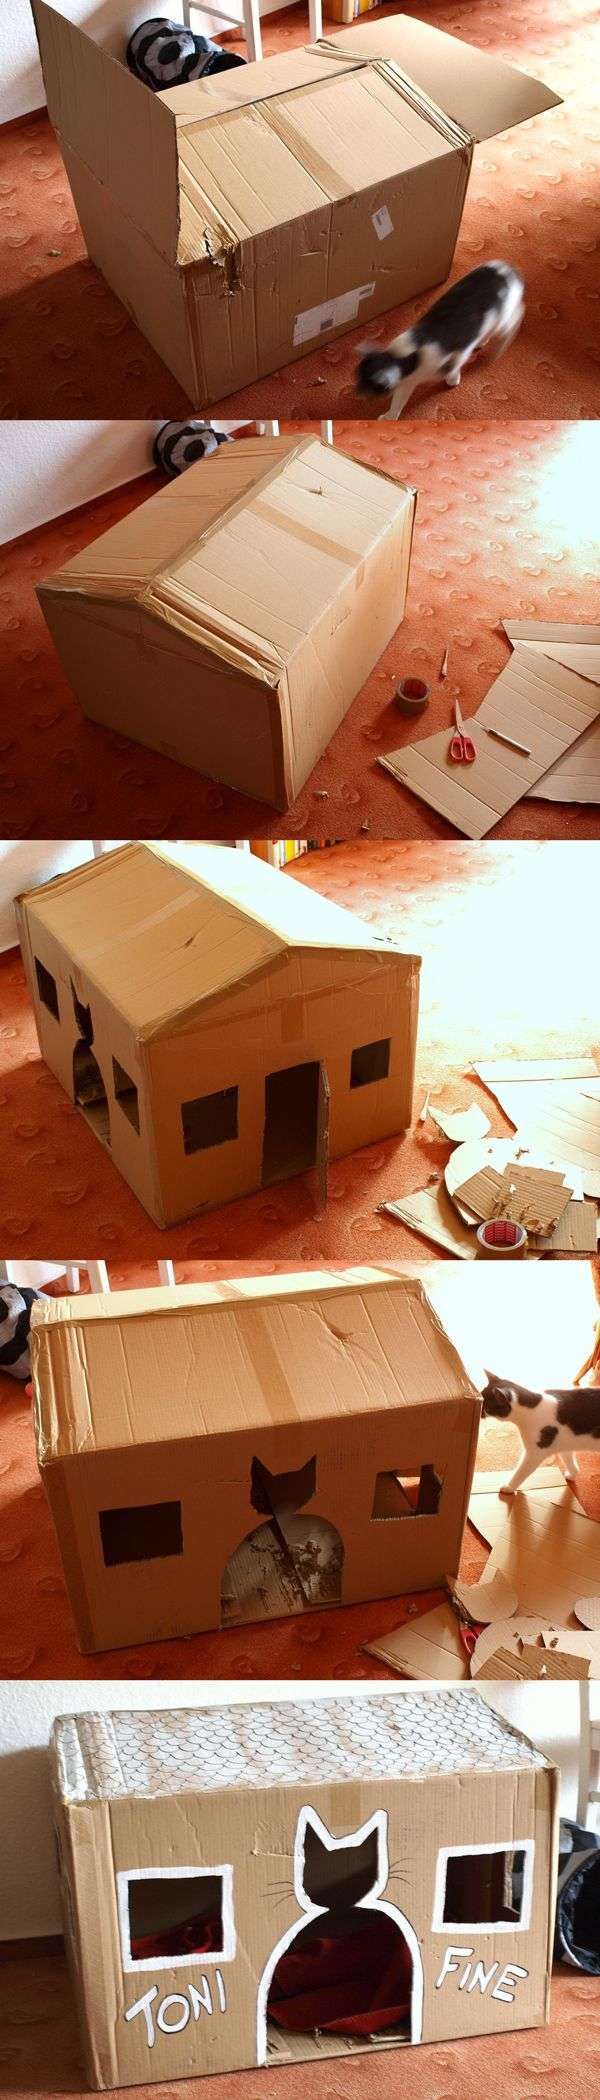 Maison pour chats avec un gros carton